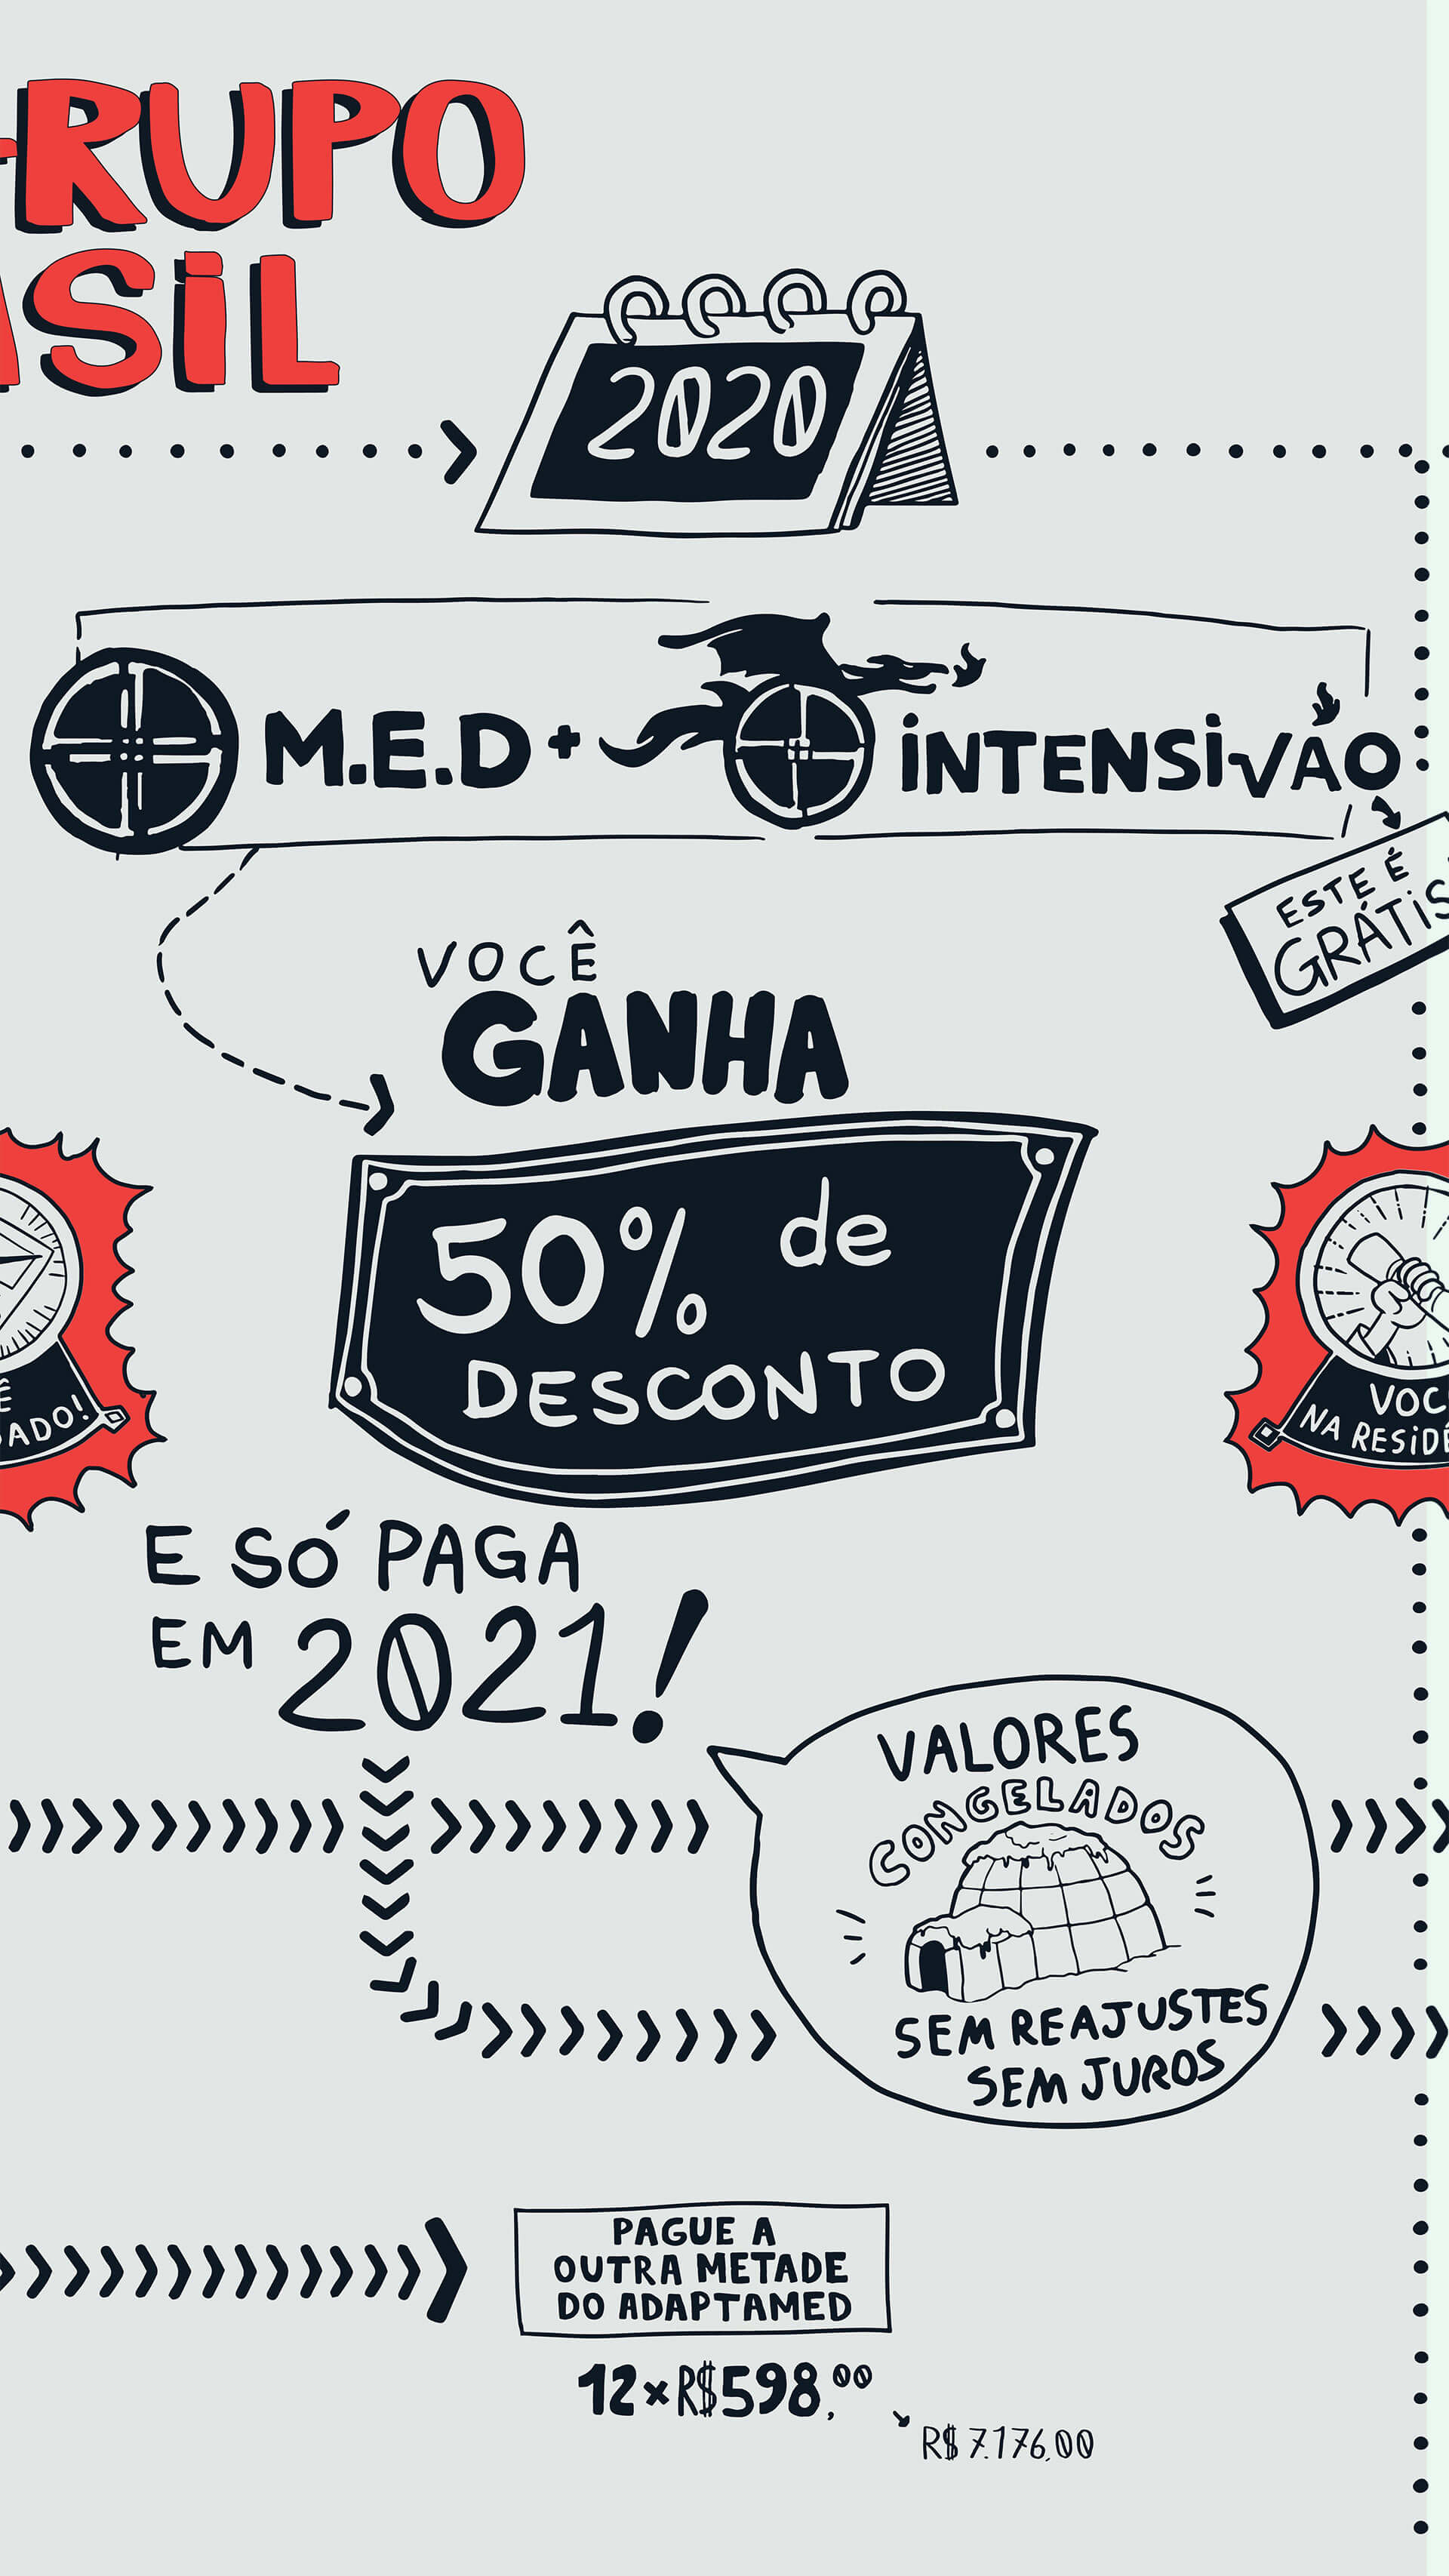 Med + Intensivão 2020